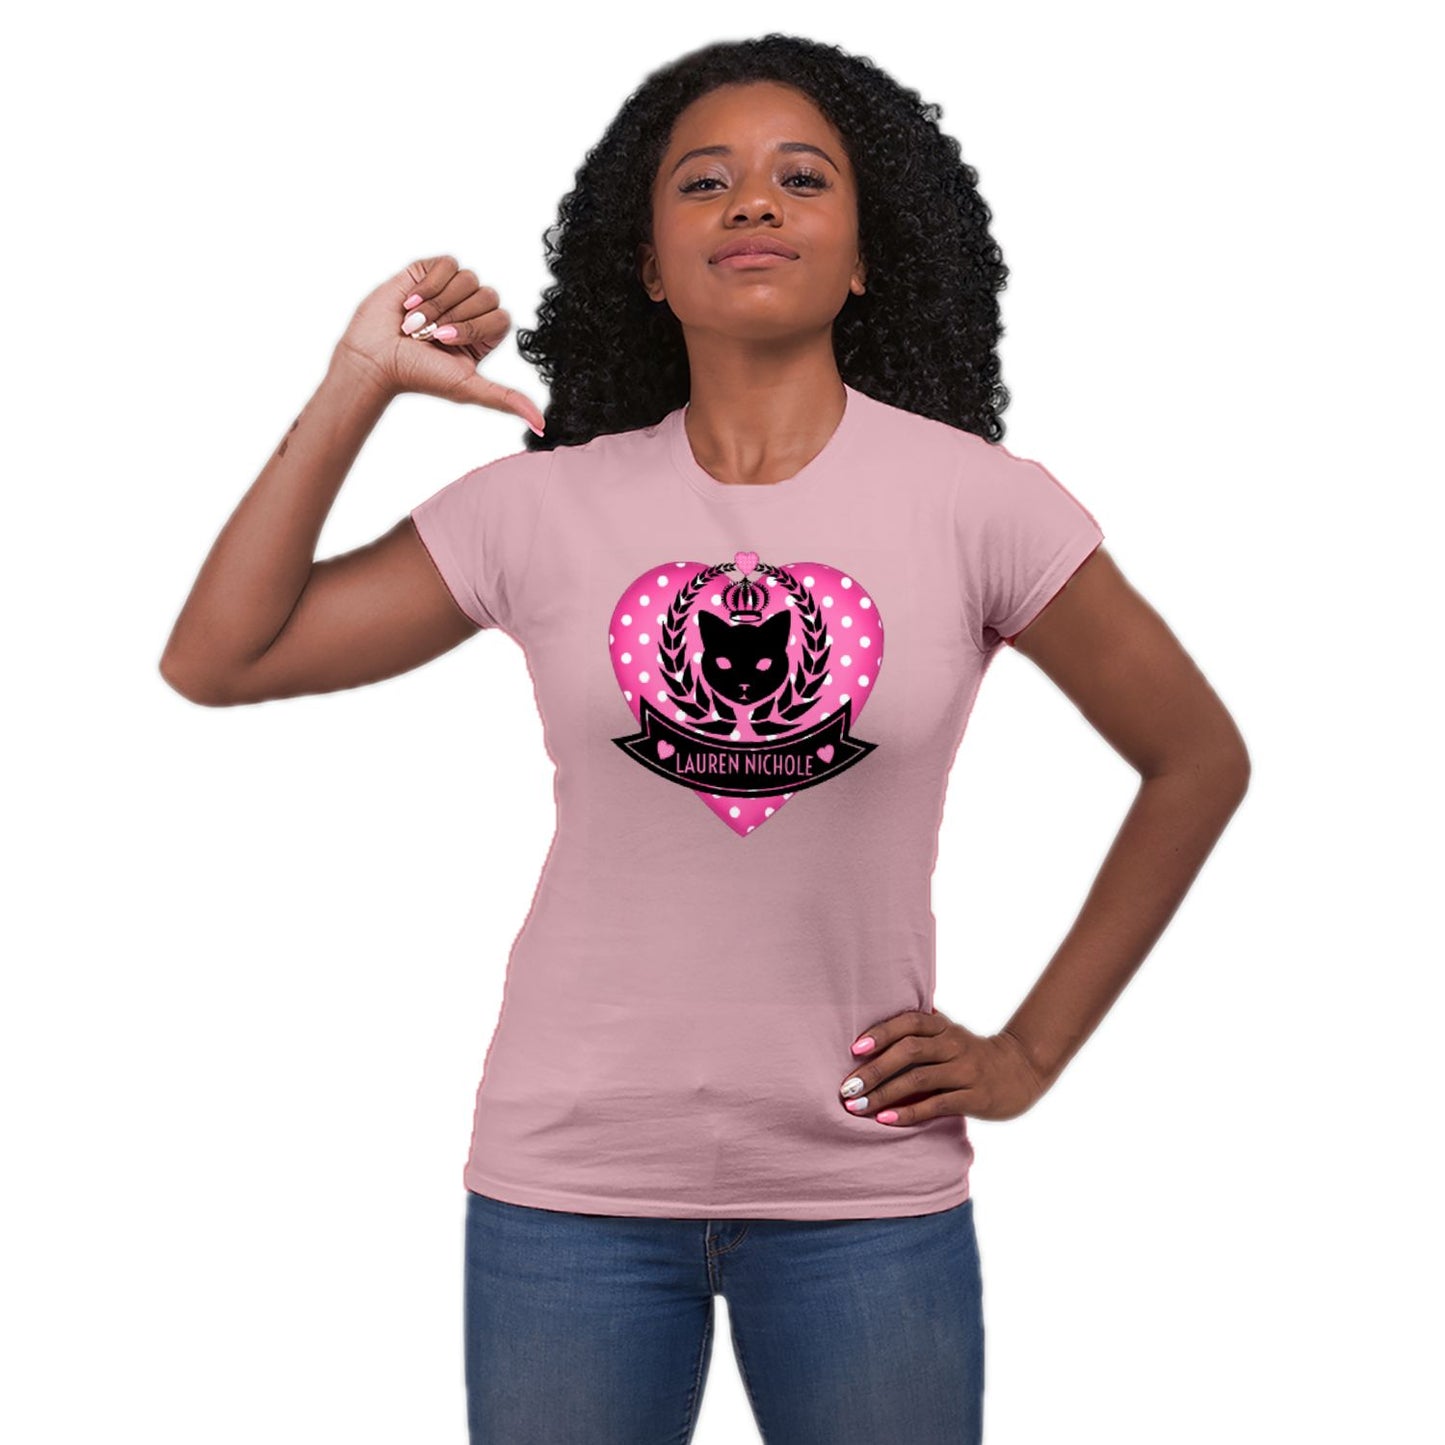 LaurenNichole Women's Cotton T-shirt (up to 3X)